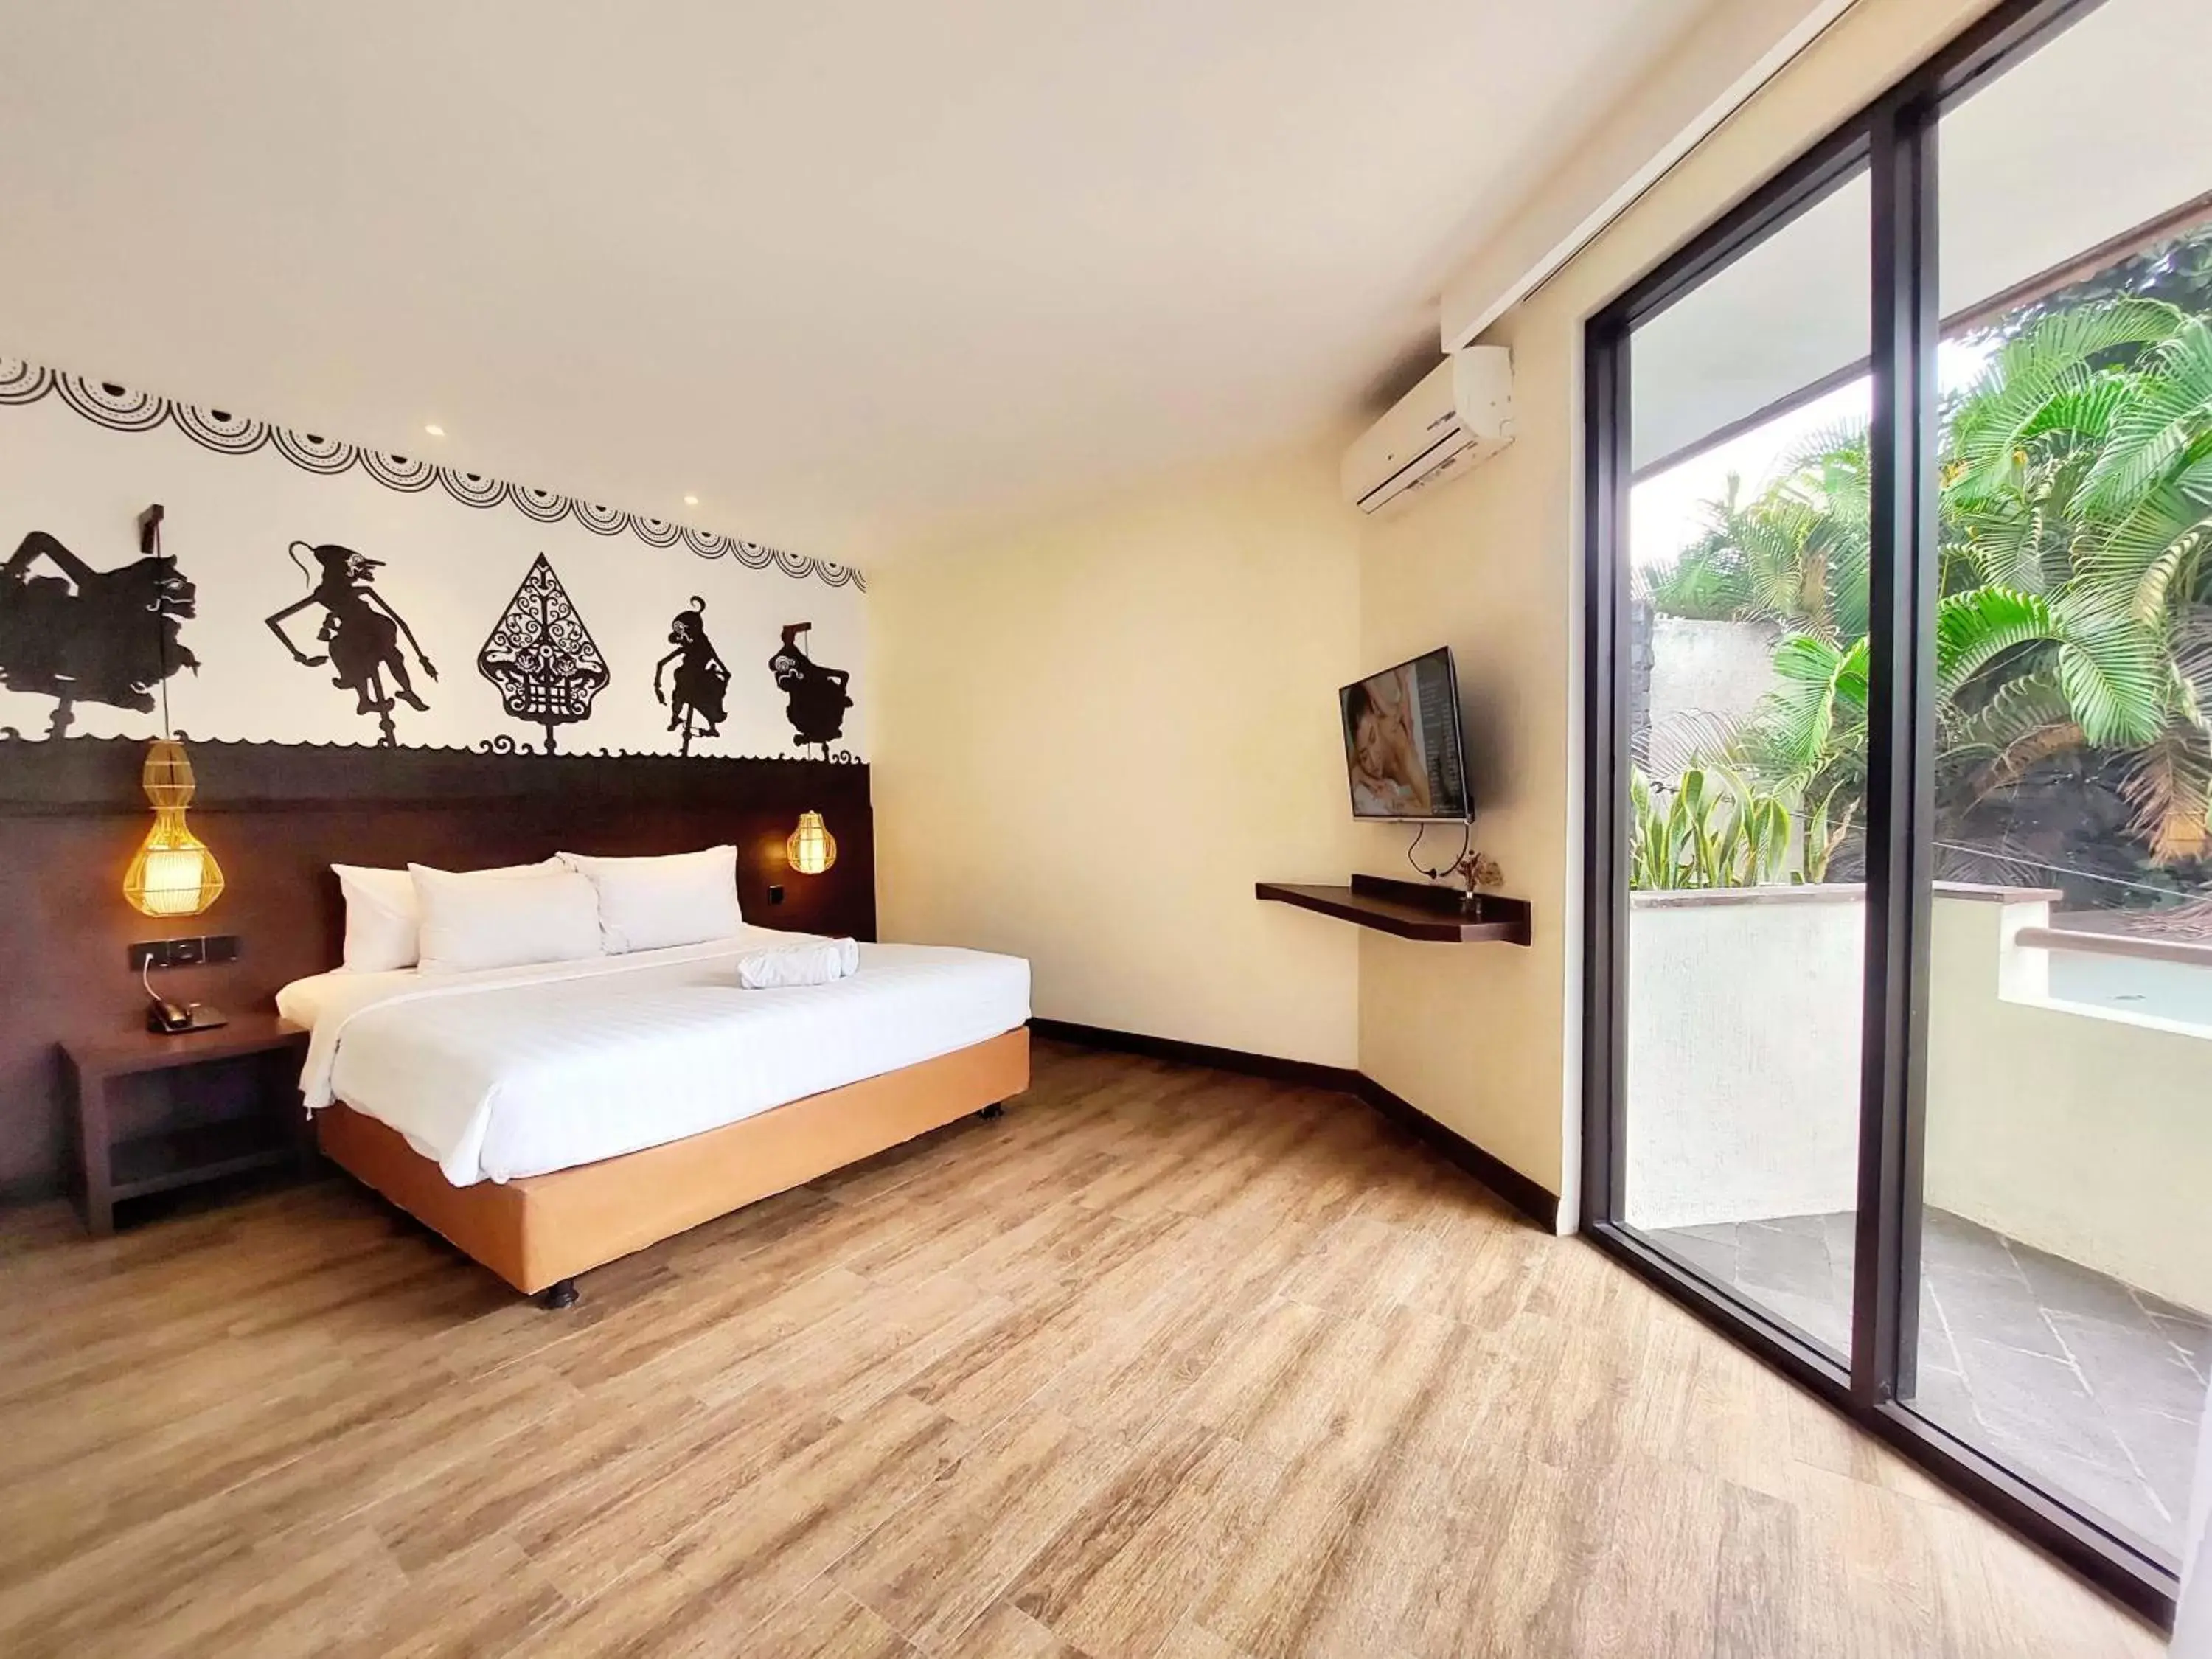 Bed in The Batu Hotel & Villas